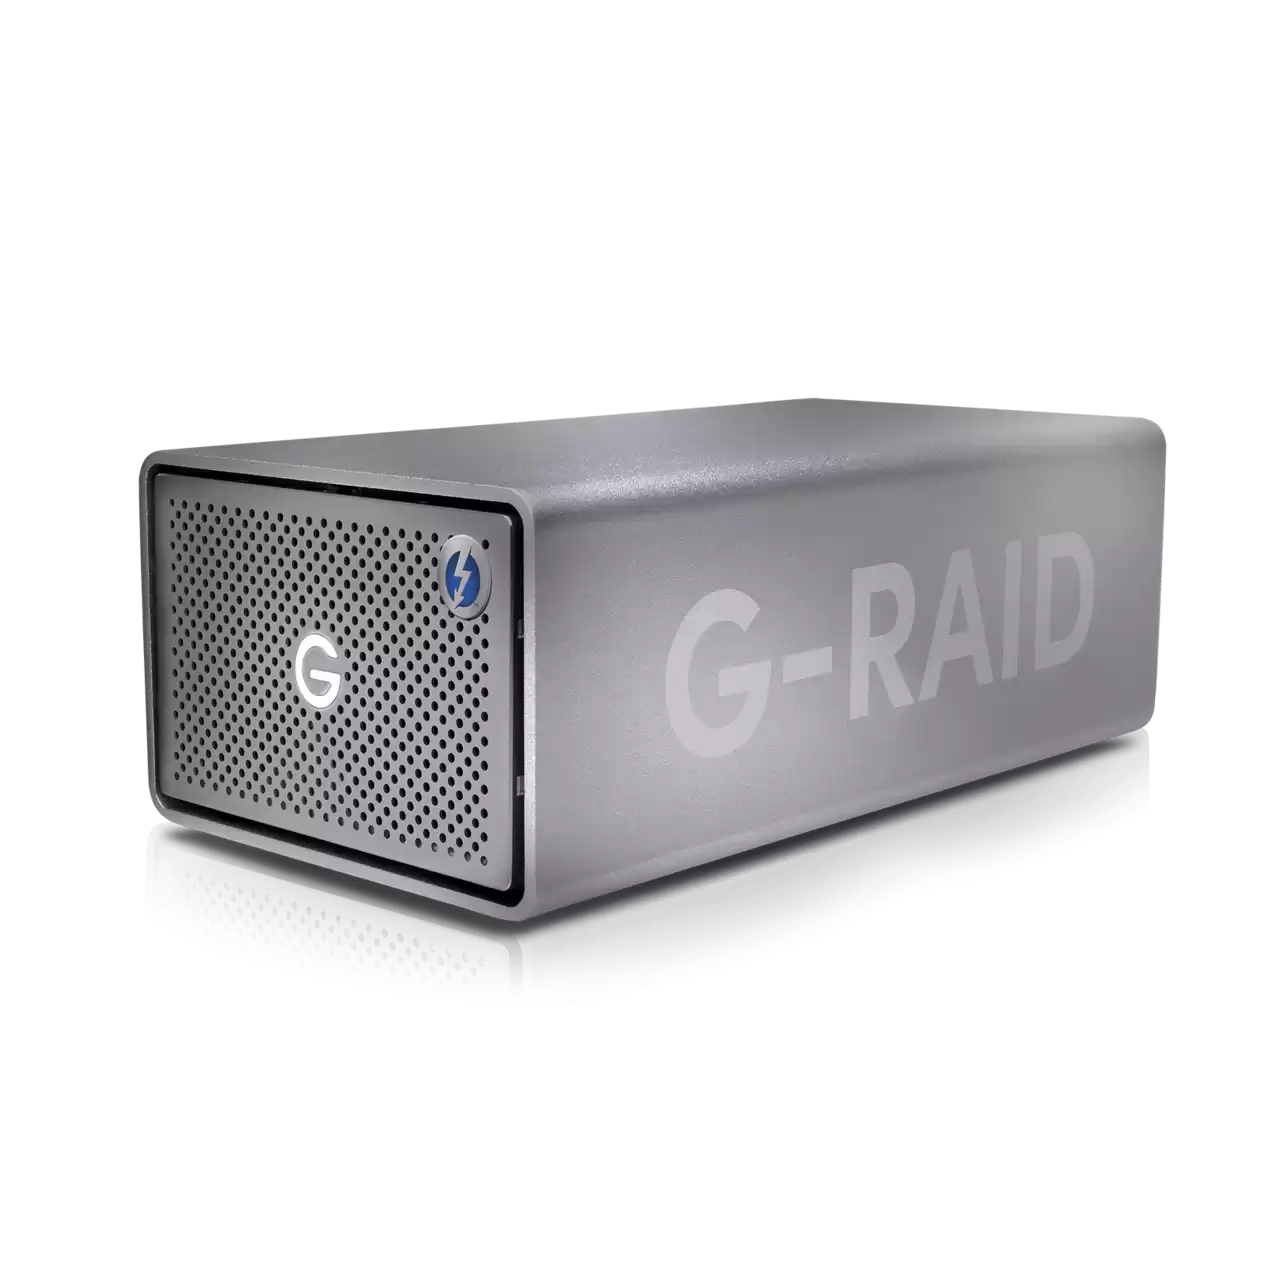 G-RAID SHUTTLE 8 160TB